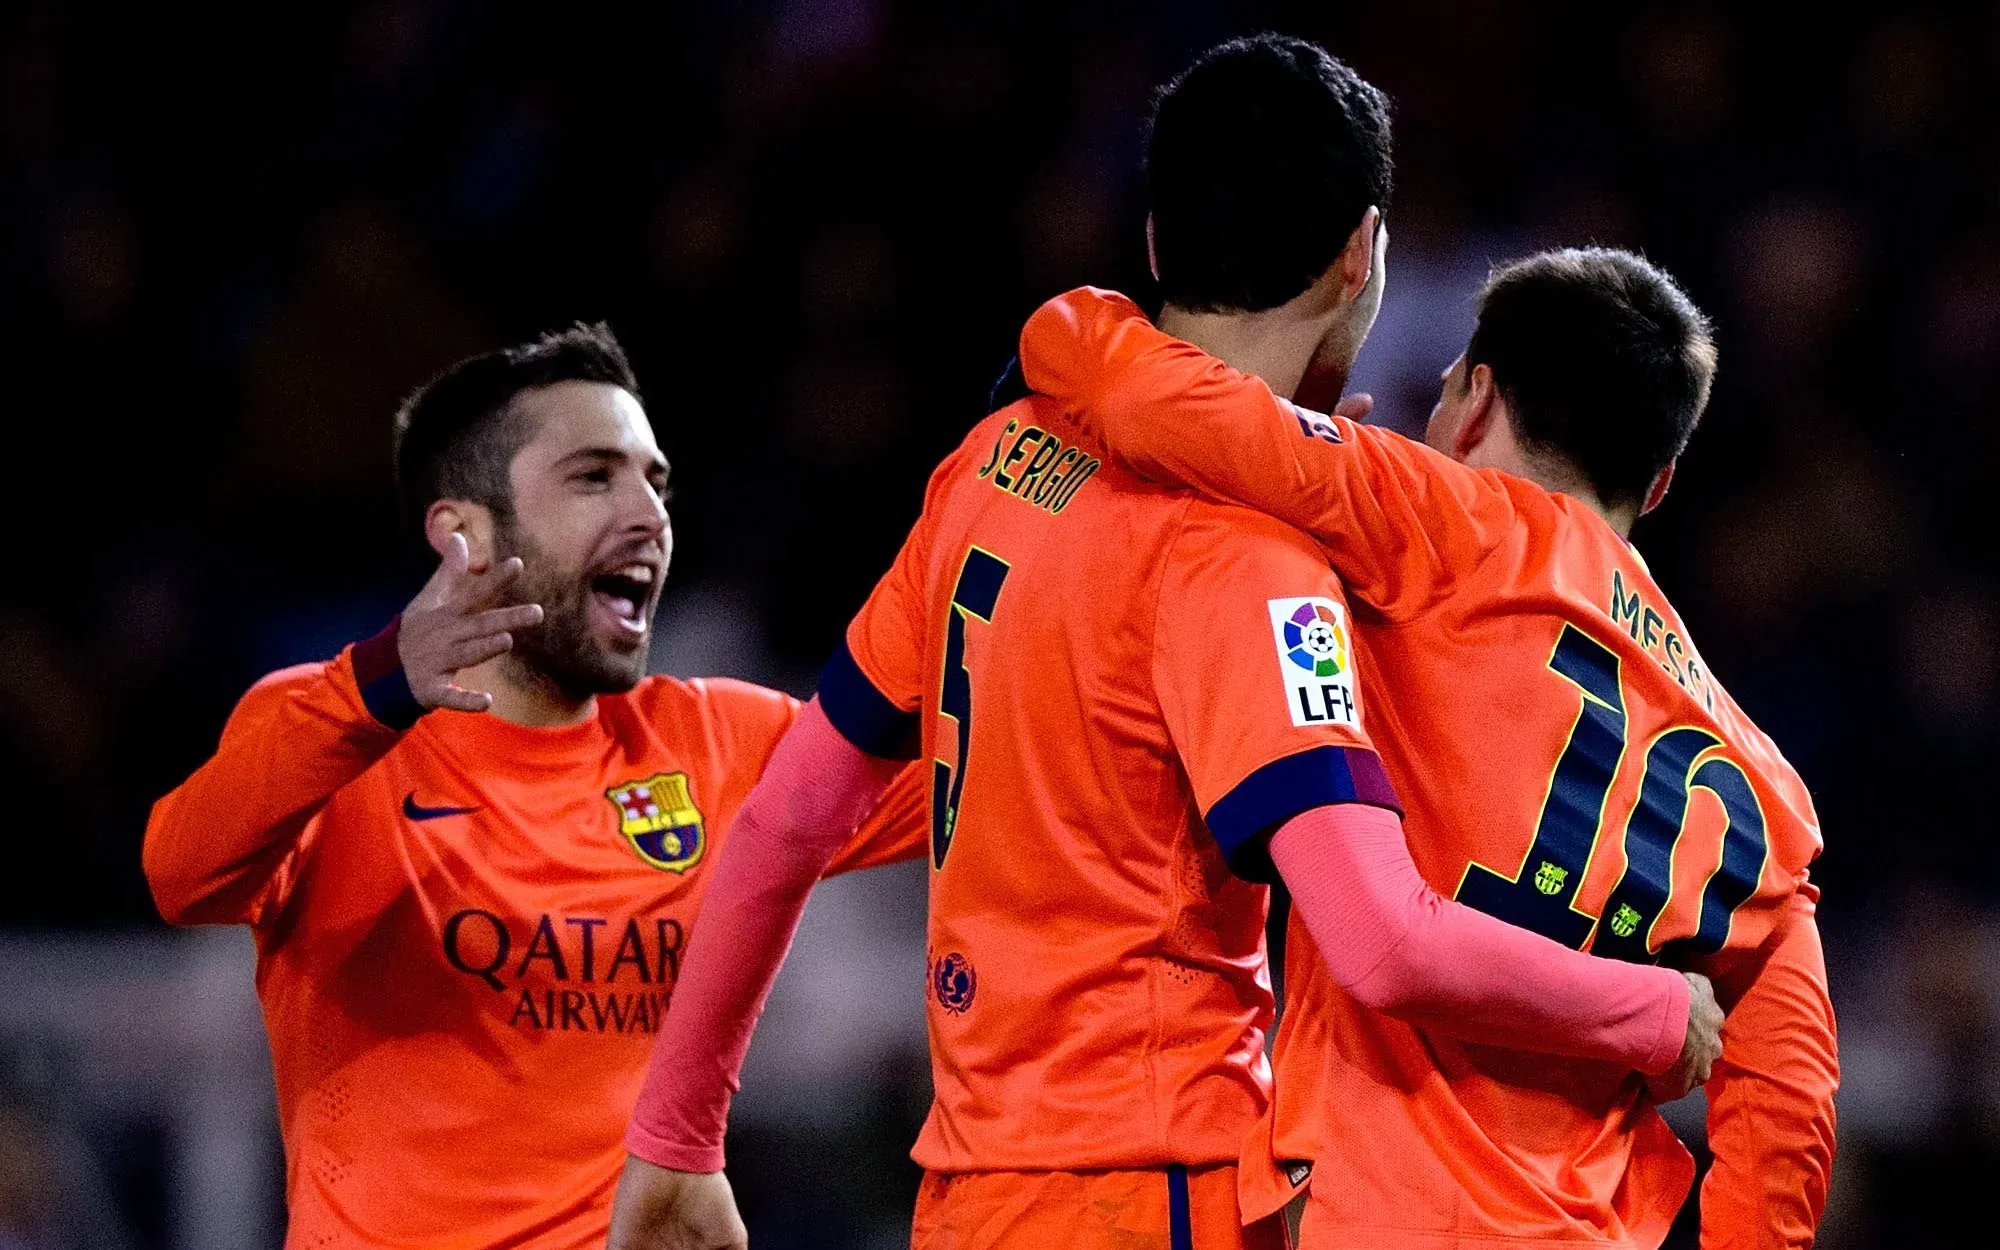 Jordi Alba podrá debutar con Lionel Messi y Sergio Busquets luego de dos años sin jugar juntos (Photo by Gonzalo Arroyo Moreno/Getty Images).